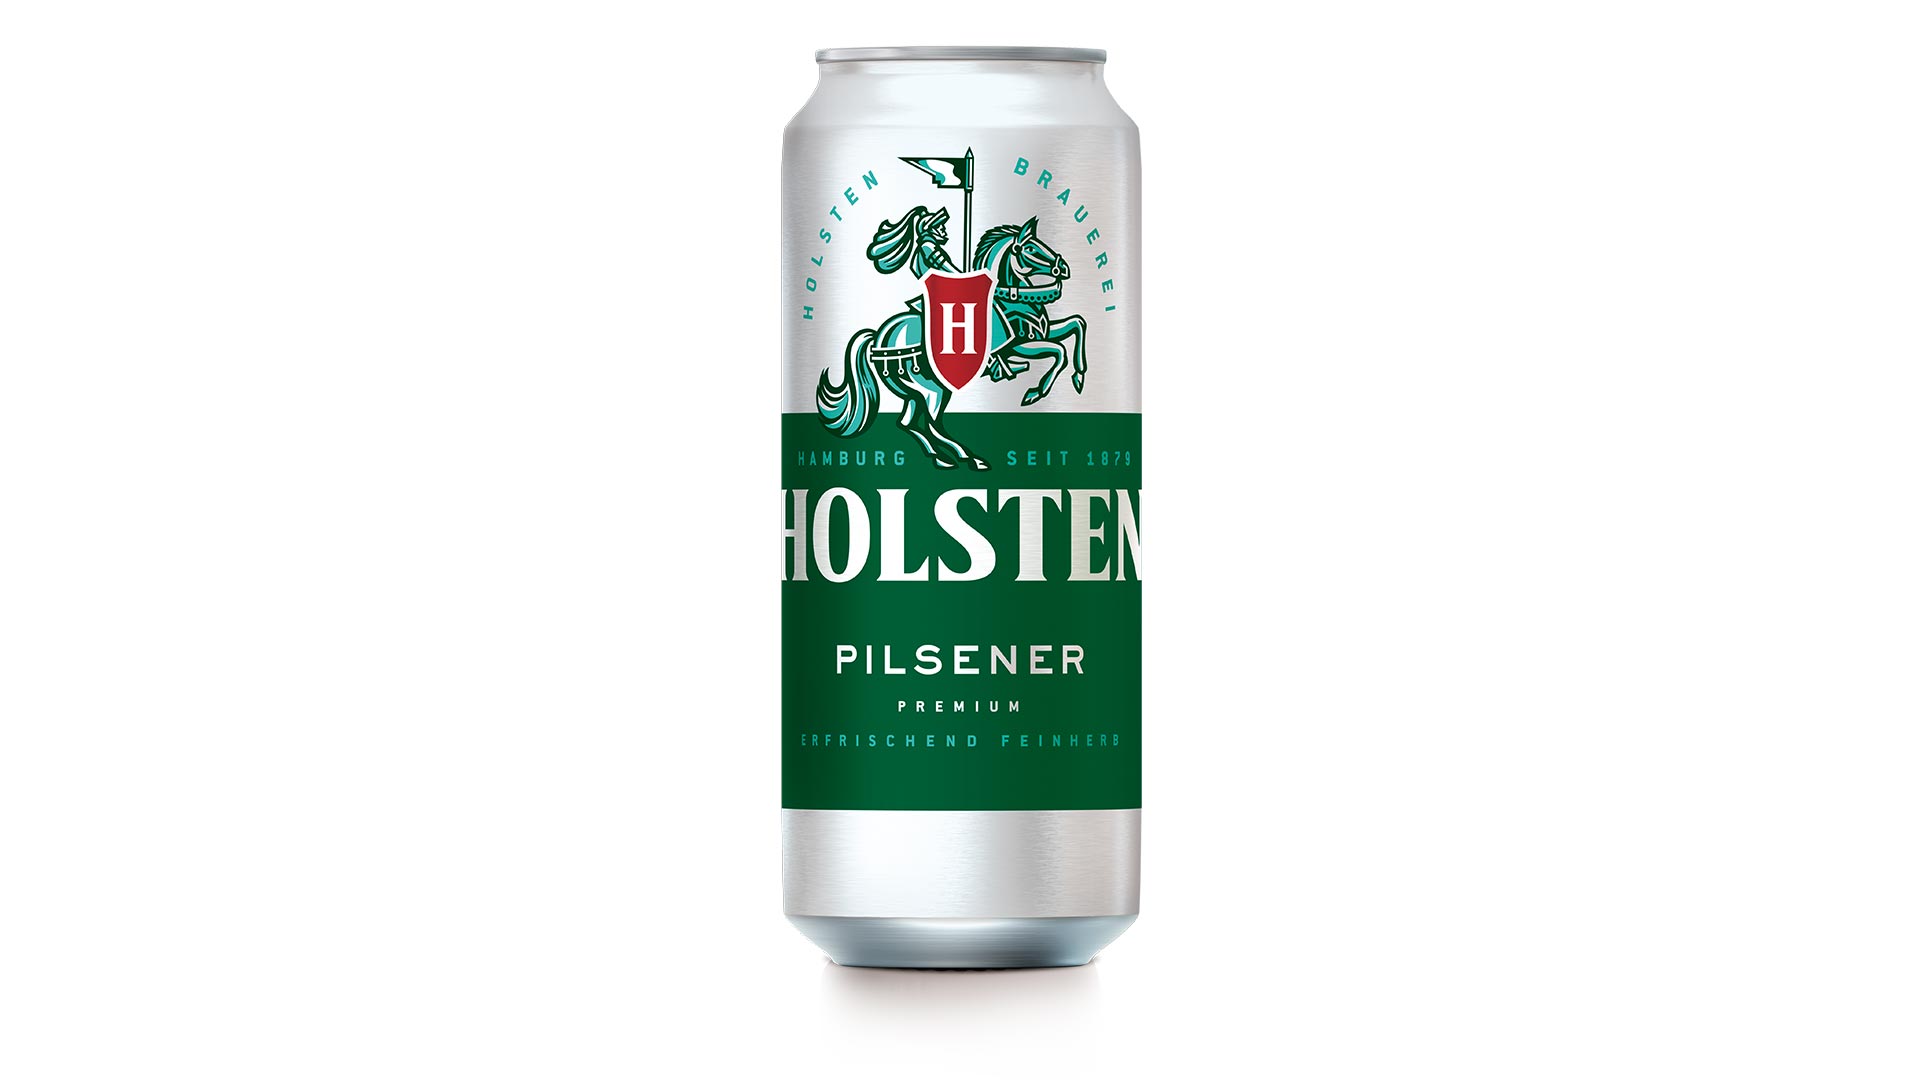 Frontalansicht von Holsten Pilsener Bier in der Dose